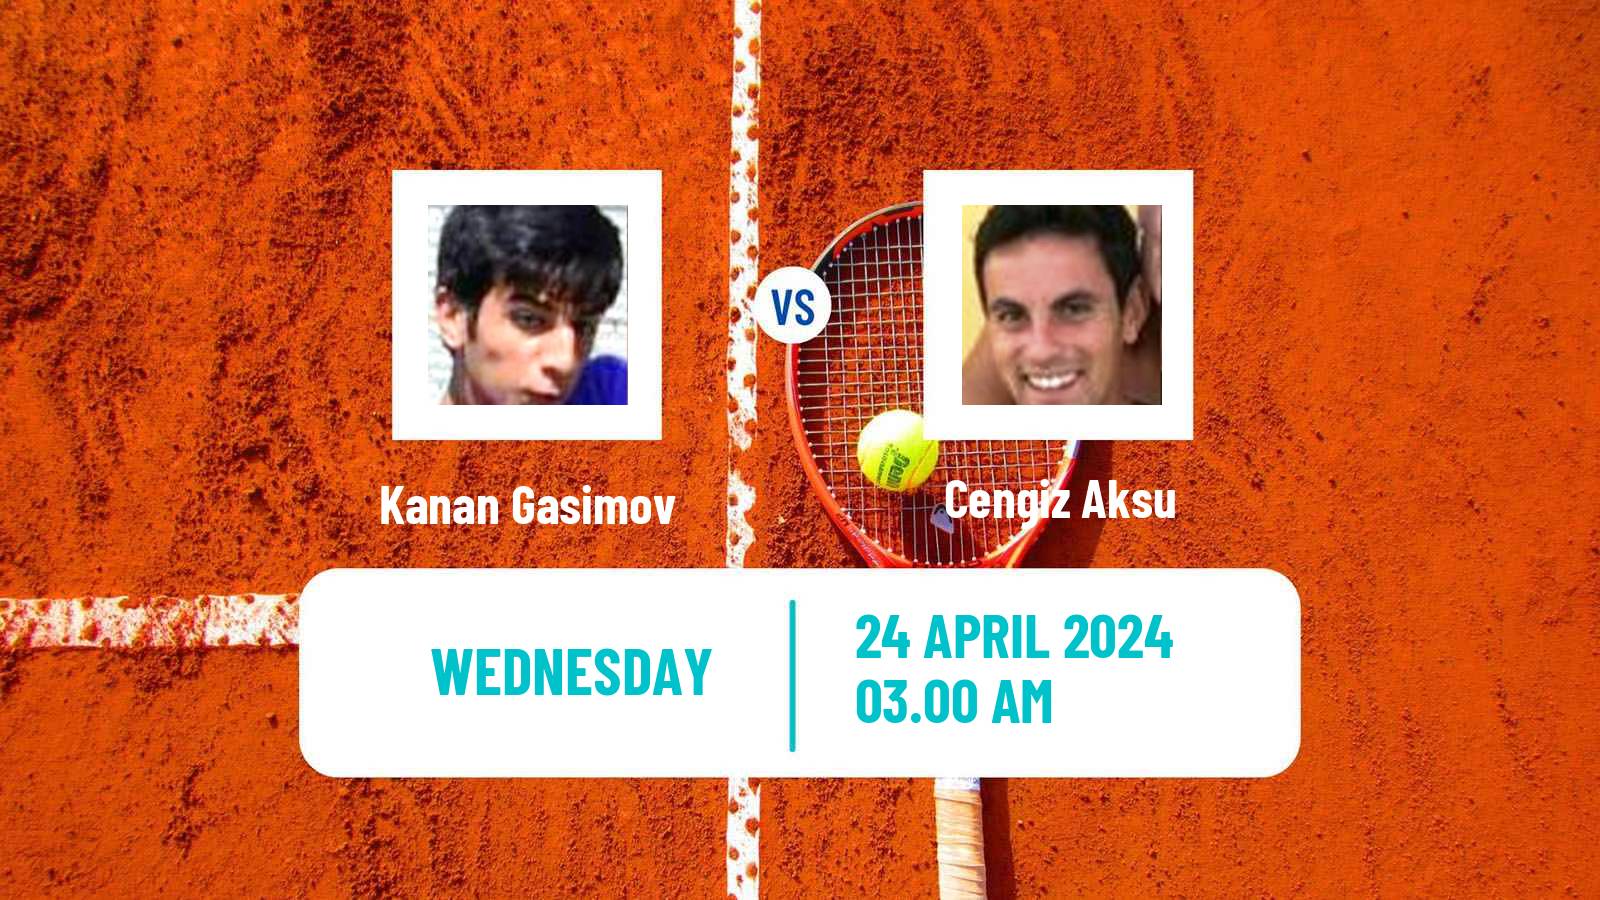 Tennis ITF M15 Antalya 12 Men Kanan Gasimov - Cengiz Aksu